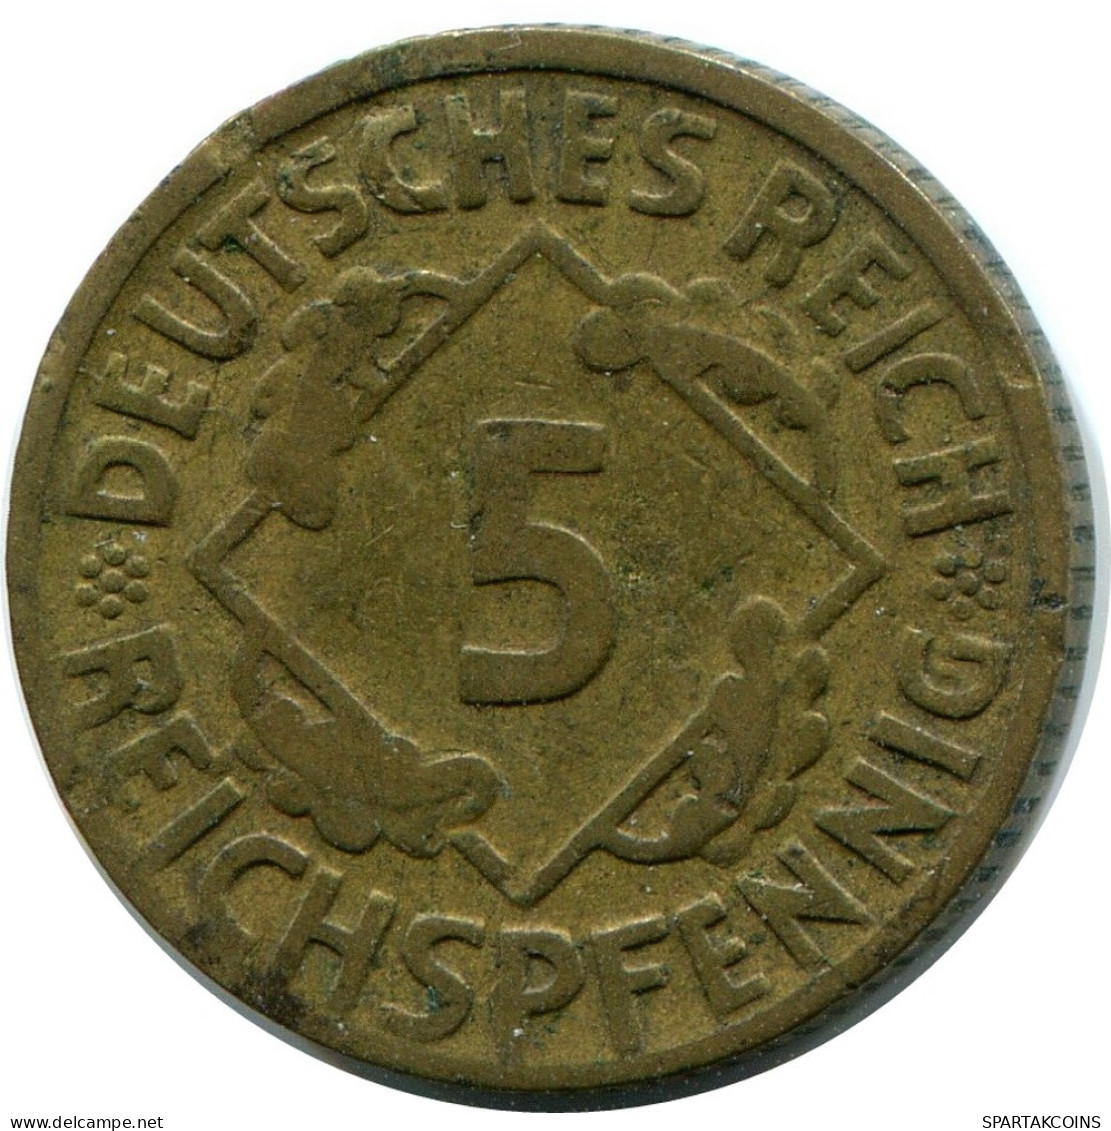 5 REICHSPFENNIG 1924 D DEUTSCHLAND Münze GERMANY #DB870.D.A - 5 Rentenpfennig & 5 Reichspfennig